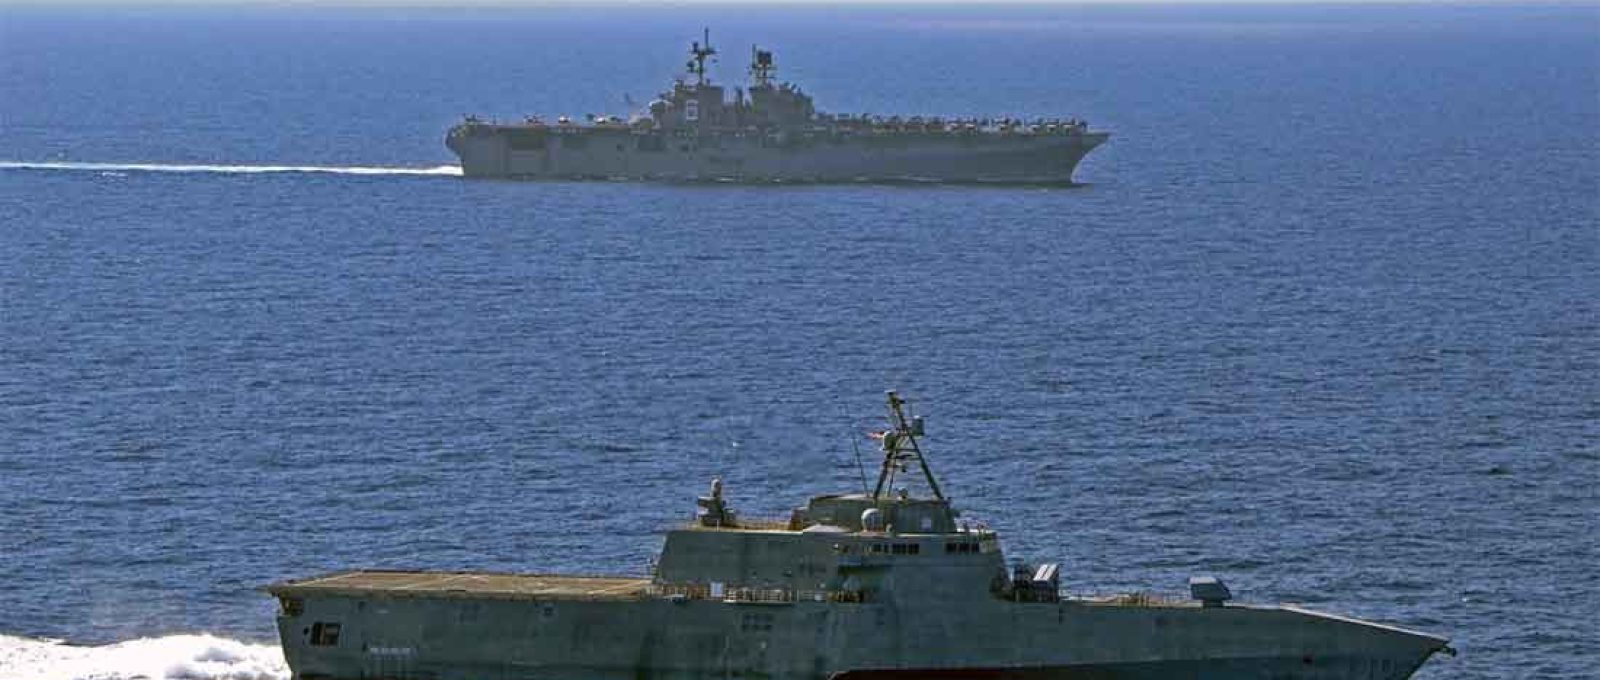 O navio de assalto anfíbio USS America navega com o navio de combate litorâneo USS Gabrielle Giffords em 13 de março de 2020, no Mar do Sul da China (Foto: US Navy).